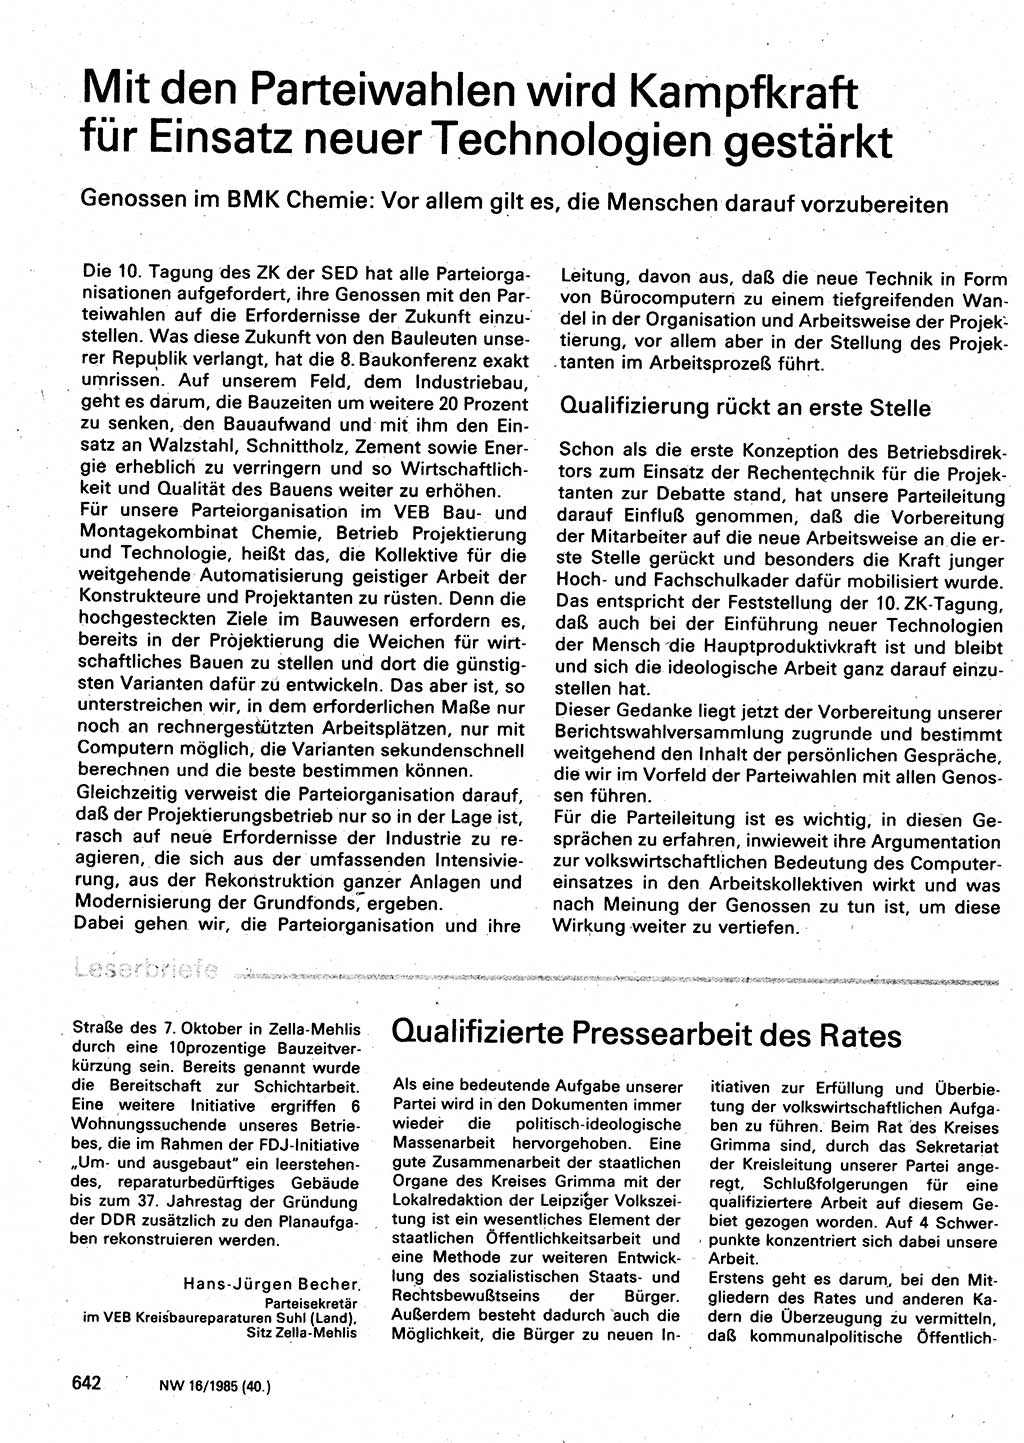 Neuer Weg (NW), Organ des Zentralkomitees (ZK) der SED (Sozialistische Einheitspartei Deutschlands) für Fragen des Parteilebens, 40. Jahrgang [Deutsche Demokratische Republik (DDR)] 1985, Seite 642 (NW ZK SED DDR 1985, S. 642)